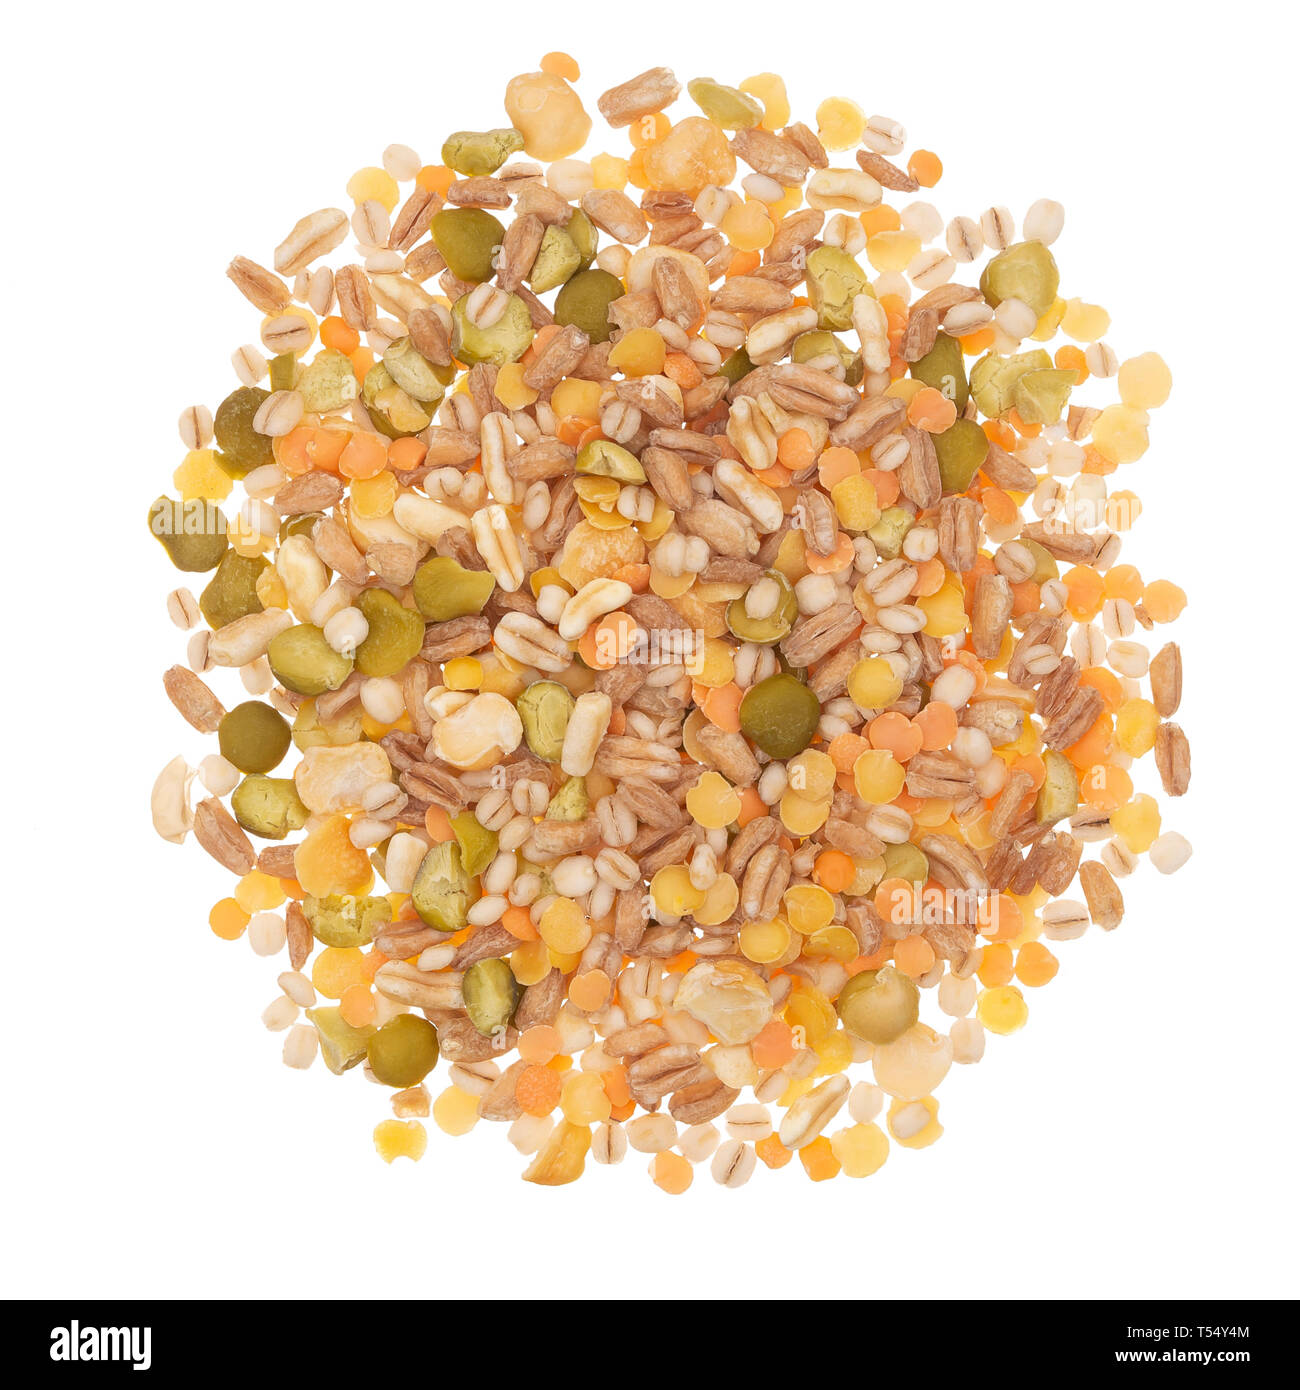 Getreide und Bohnen, Hülsenfrüchte mischen. Haufen, auf weißem Hintergrund. Stockfoto